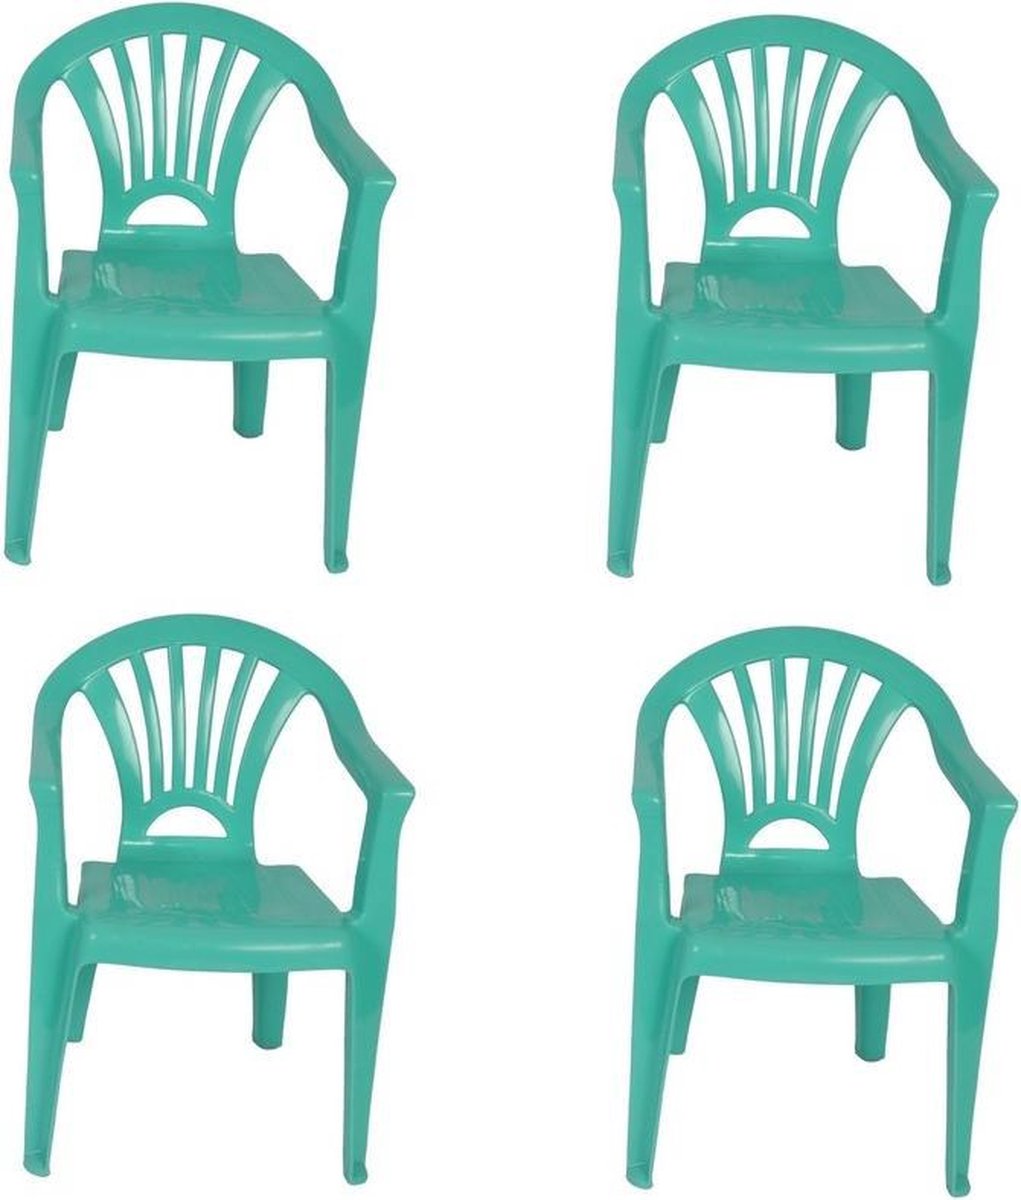 4x Kinderstoelen mint - tuinmeubels- stoelen voor kinderen